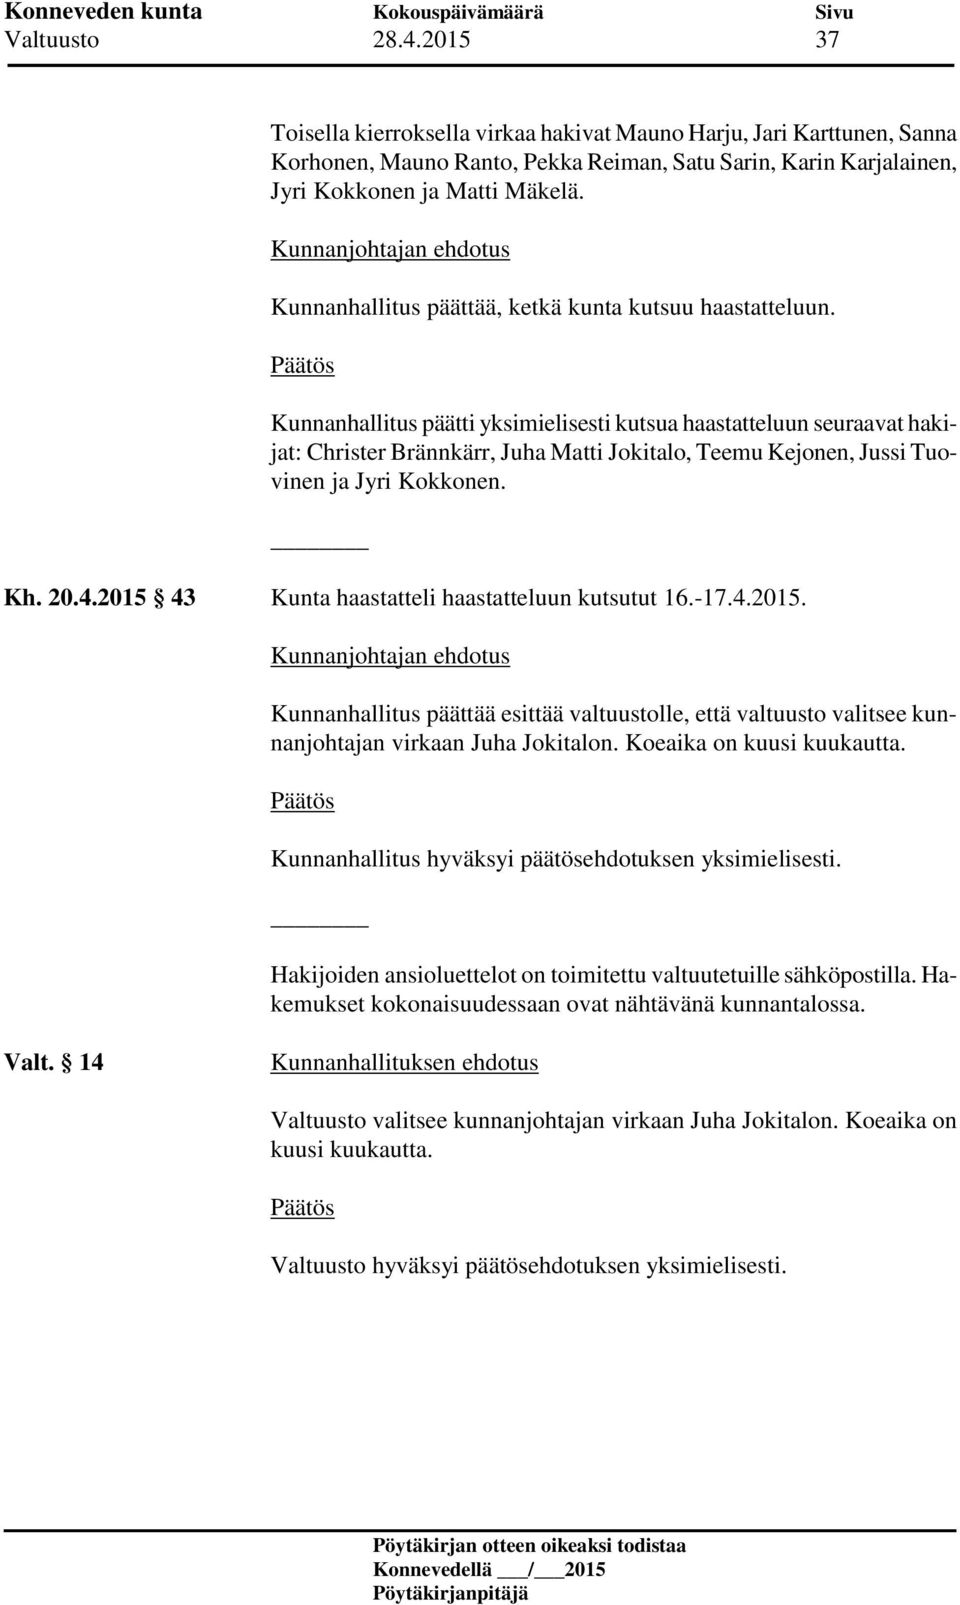 Kunnanhallitus päätti yksimielisesti kutsua haastatteluun seuraavat hakijat: Christer Brännkärr, Juha Matti Jokitalo, Teemu Kejonen, Jussi Tuovinen ja Jyri Kokkonen. Kh. 20.4.